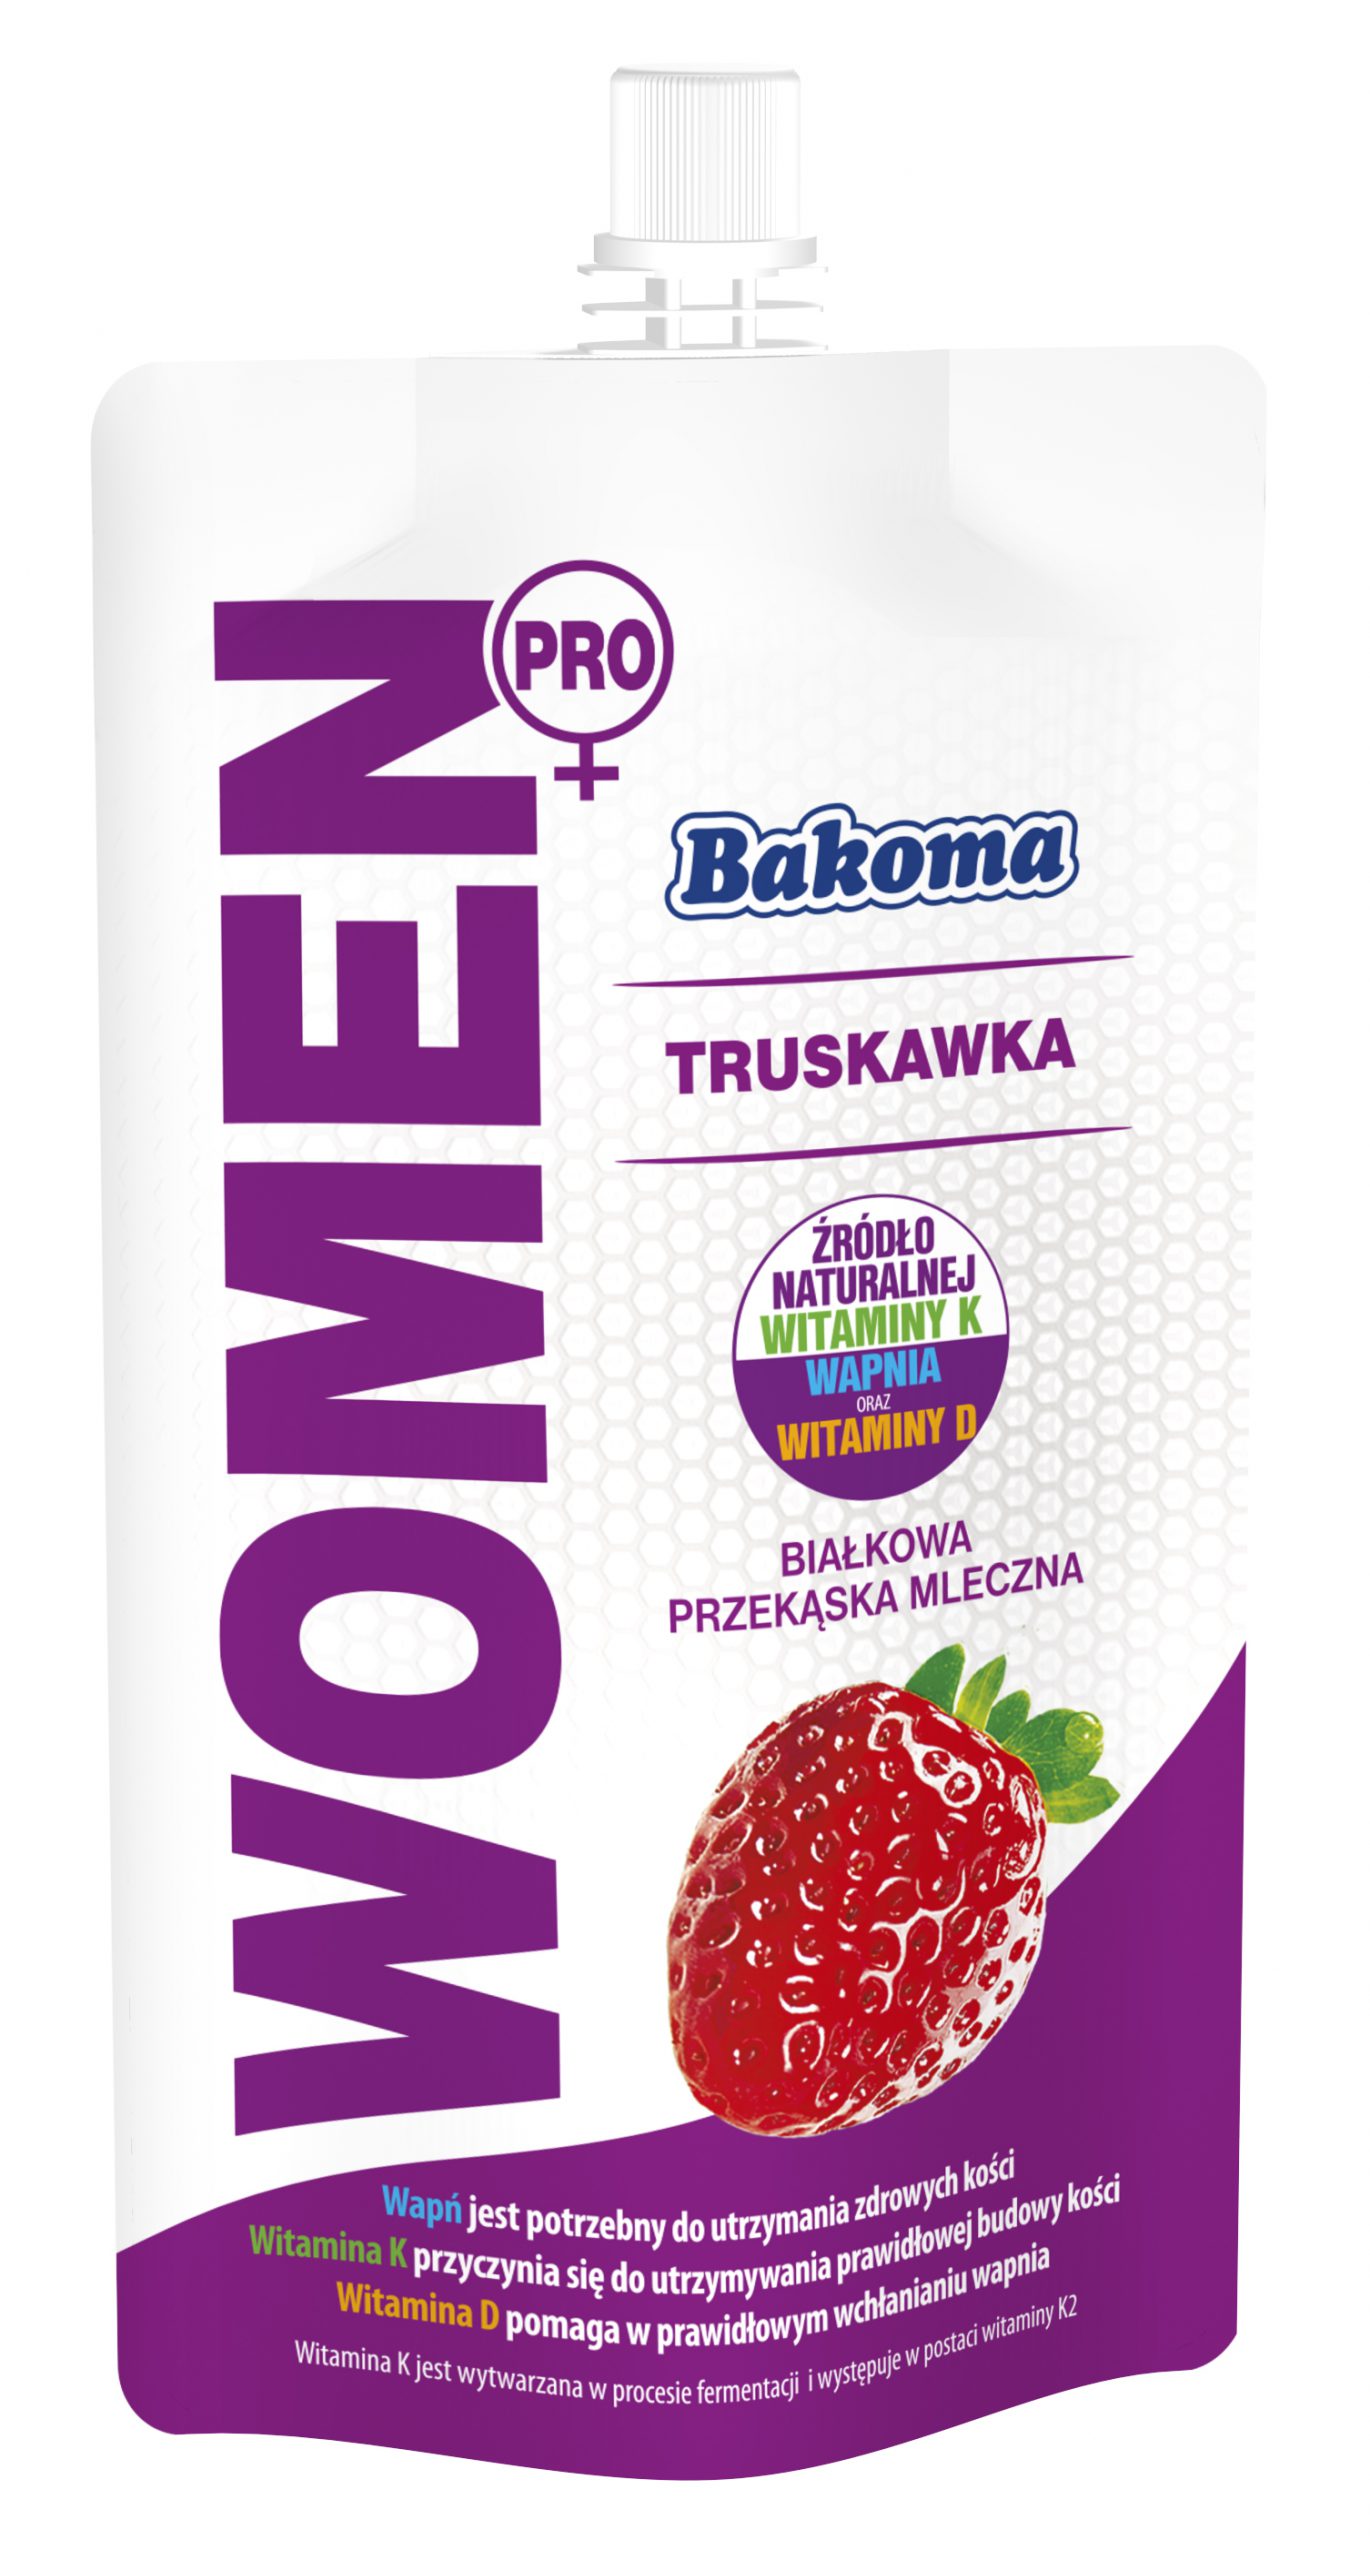 Nowe produkty Bakoma Women